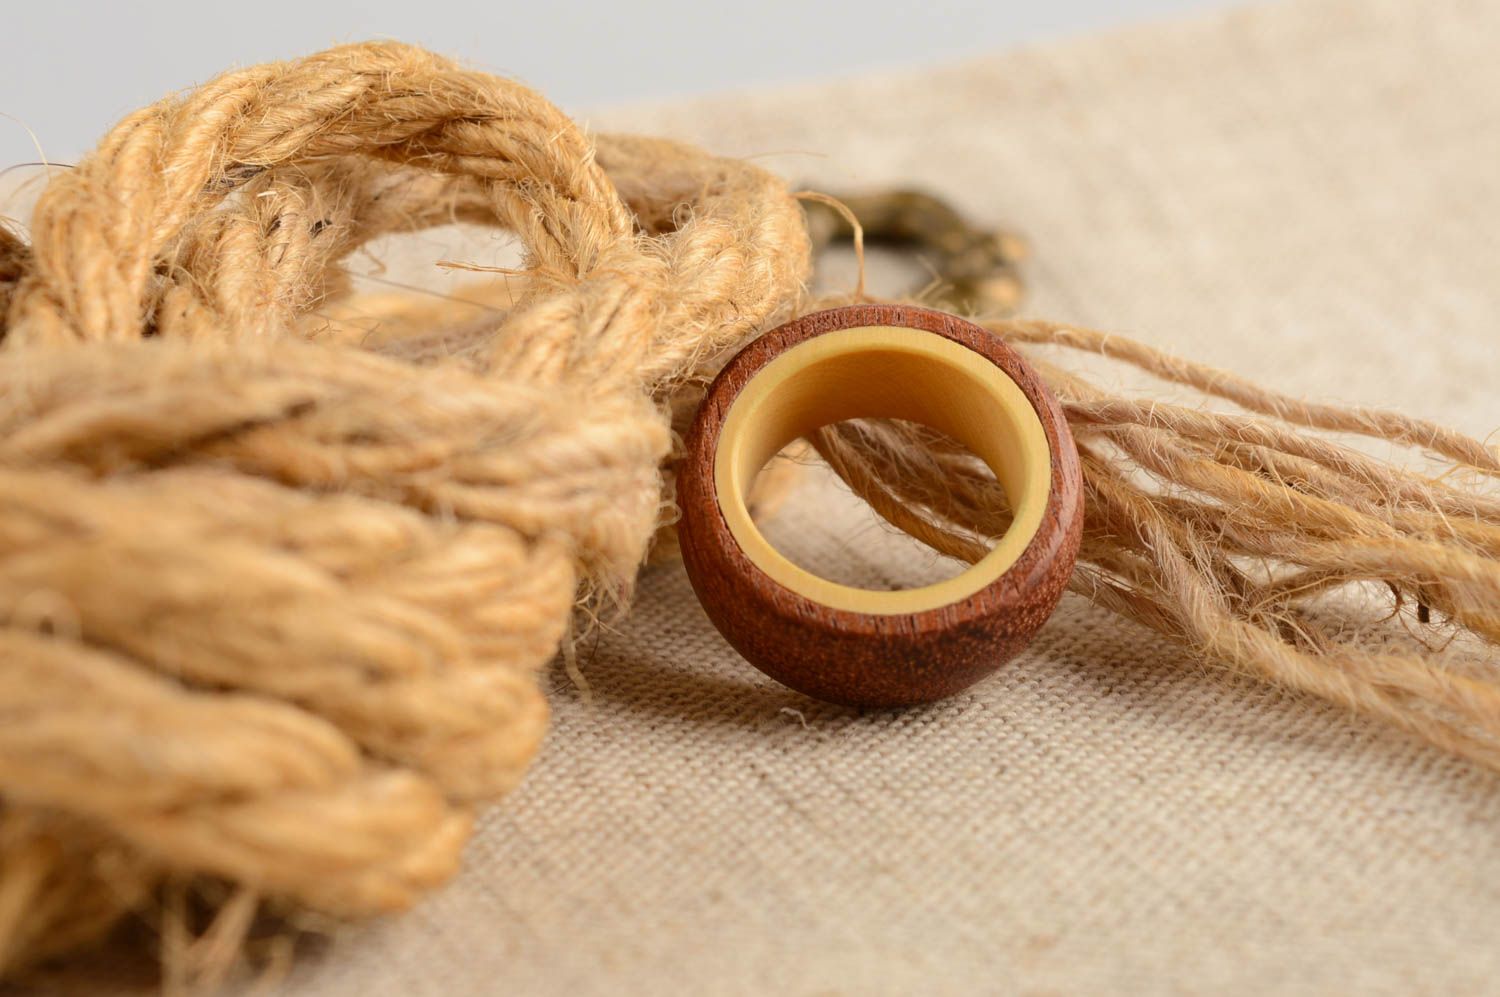 Уникальный авторский аксессуар кольцо ручной работы из дерева унисекс эко стиль фото 1